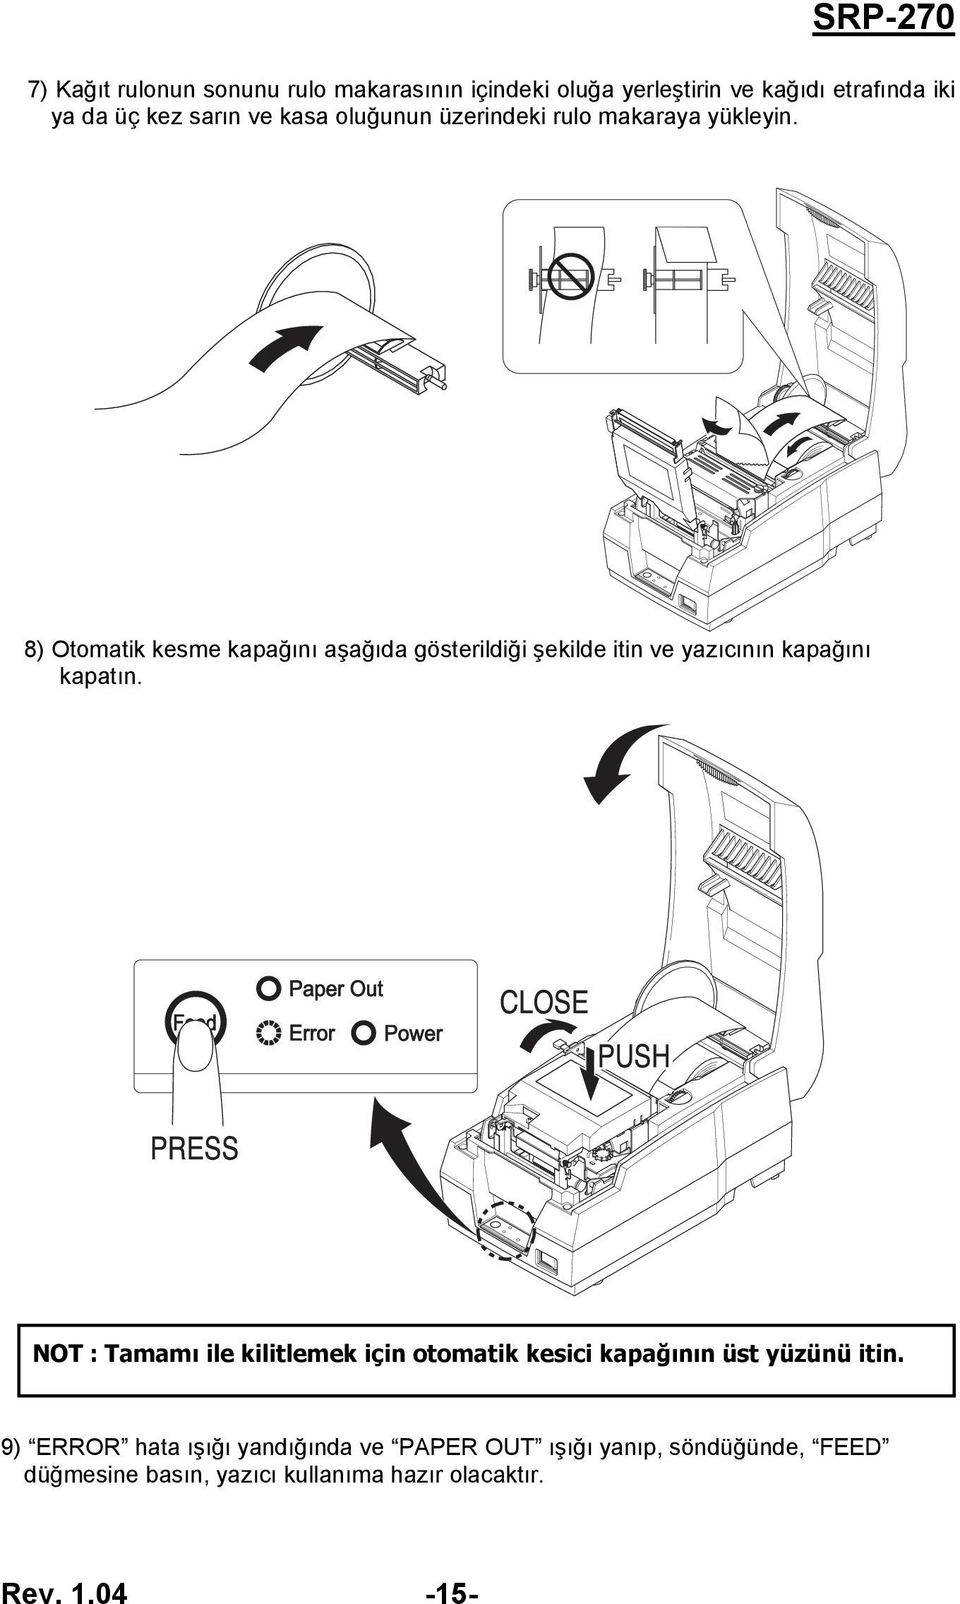 8) Otomatik kesme kapağını aşağıda gösterildiği şekilde itin ve yazıcının kapağını kapatın.